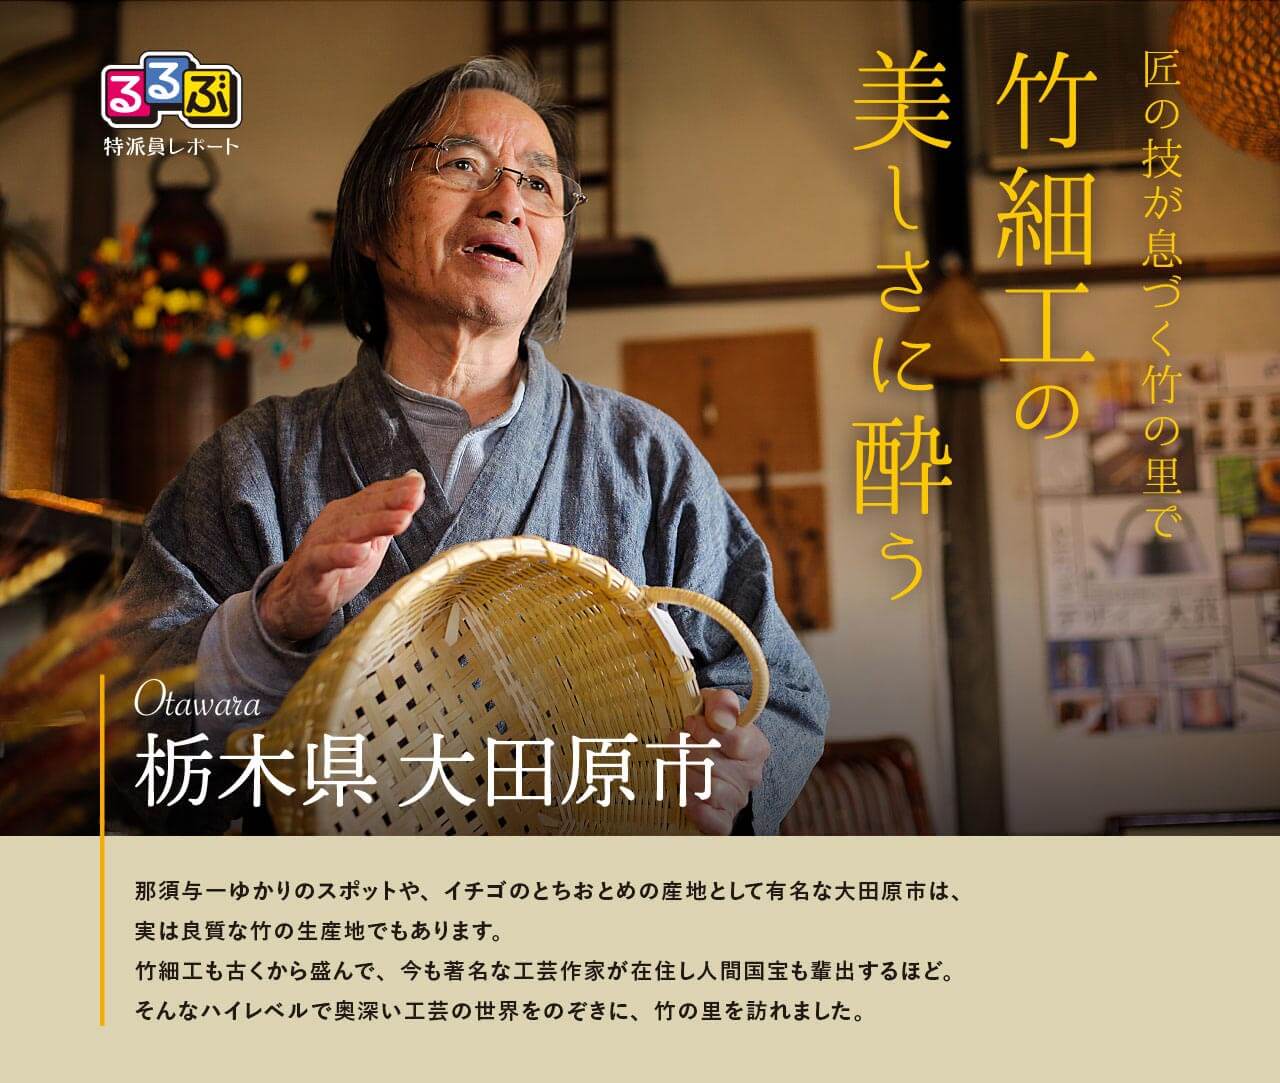 竹細工の美しさに酔う | 栃木県大田原市 の旅行レポート